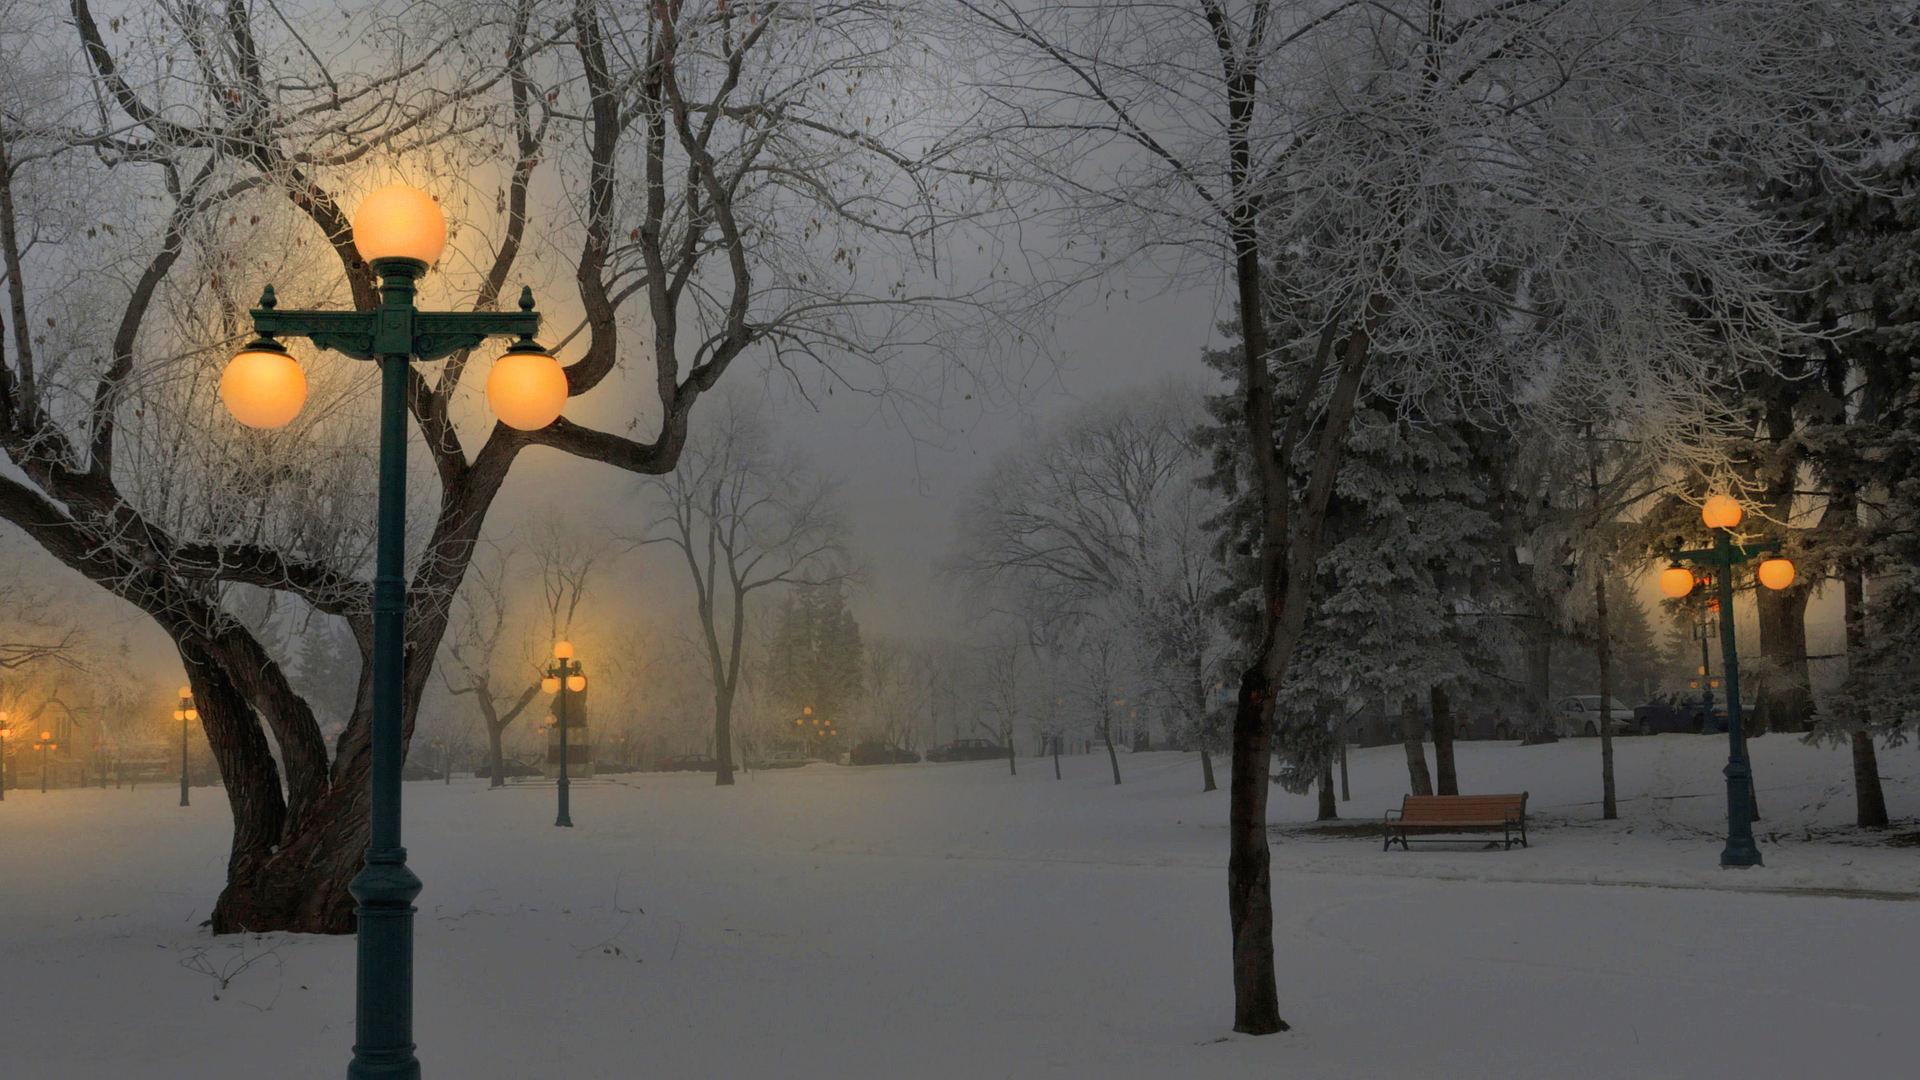 Картинка заснеженная улица ночь зима фонари деревья в снегу обои на рабочий  стол